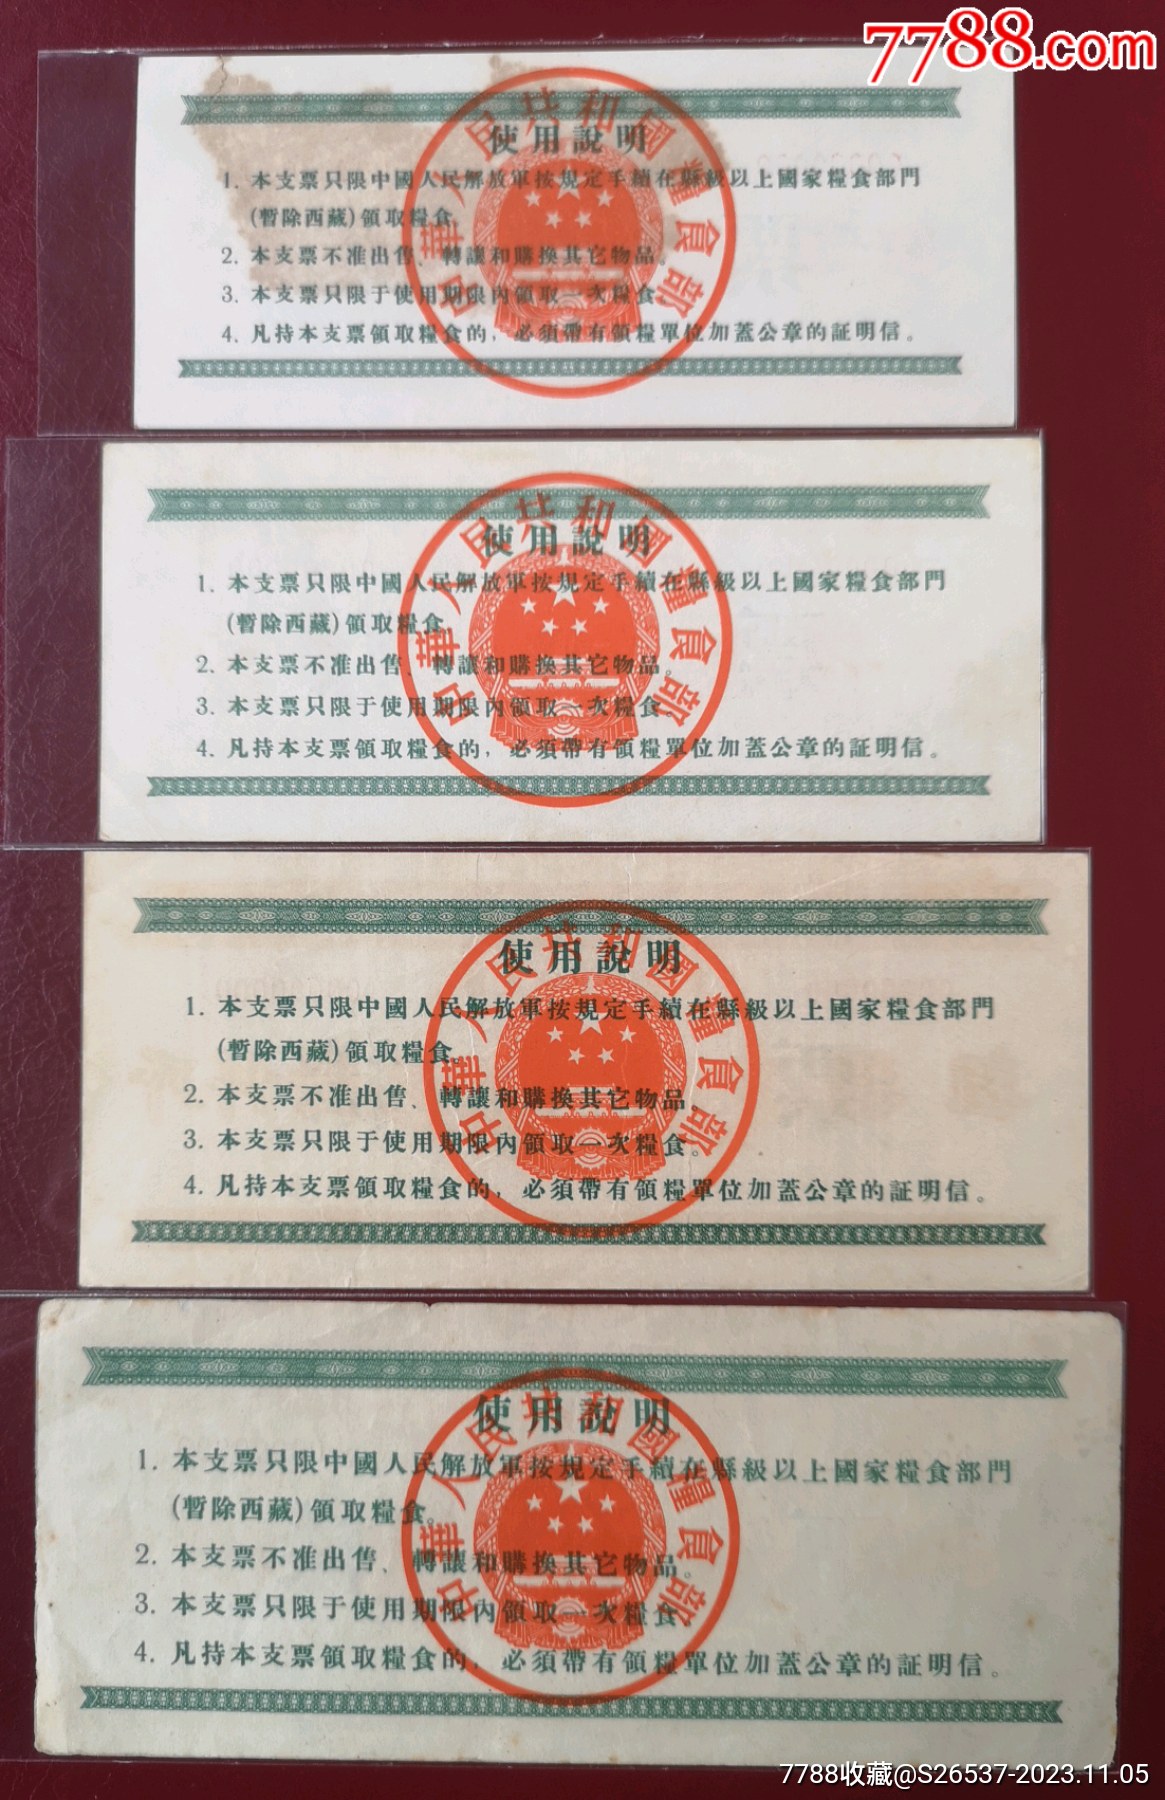 1958中華人民共和國糧食部*用糧定額支票《樣張》16全_價格14318元_第7張_